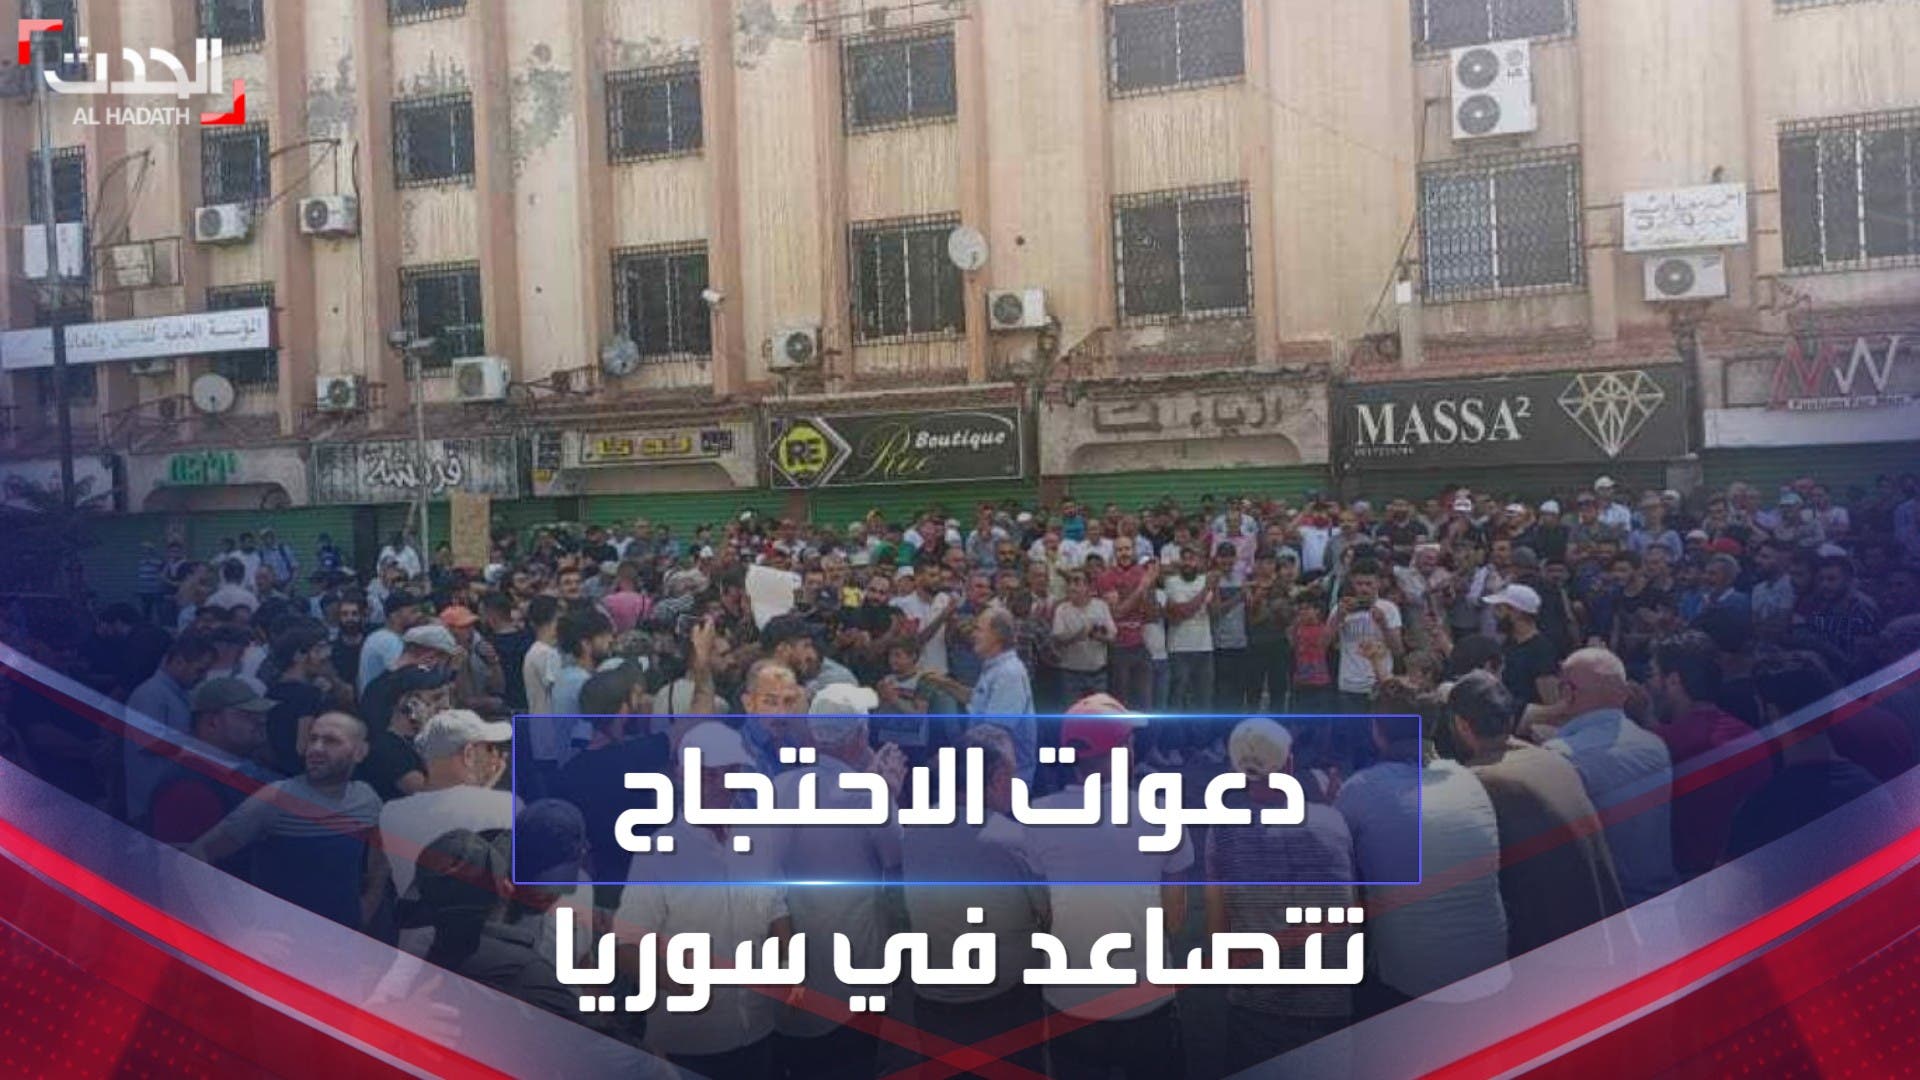 دعوات الاحتجاج والإضراب تتصاعد في سوريا رفضًا للأوضاع الاقتصادية المتردية